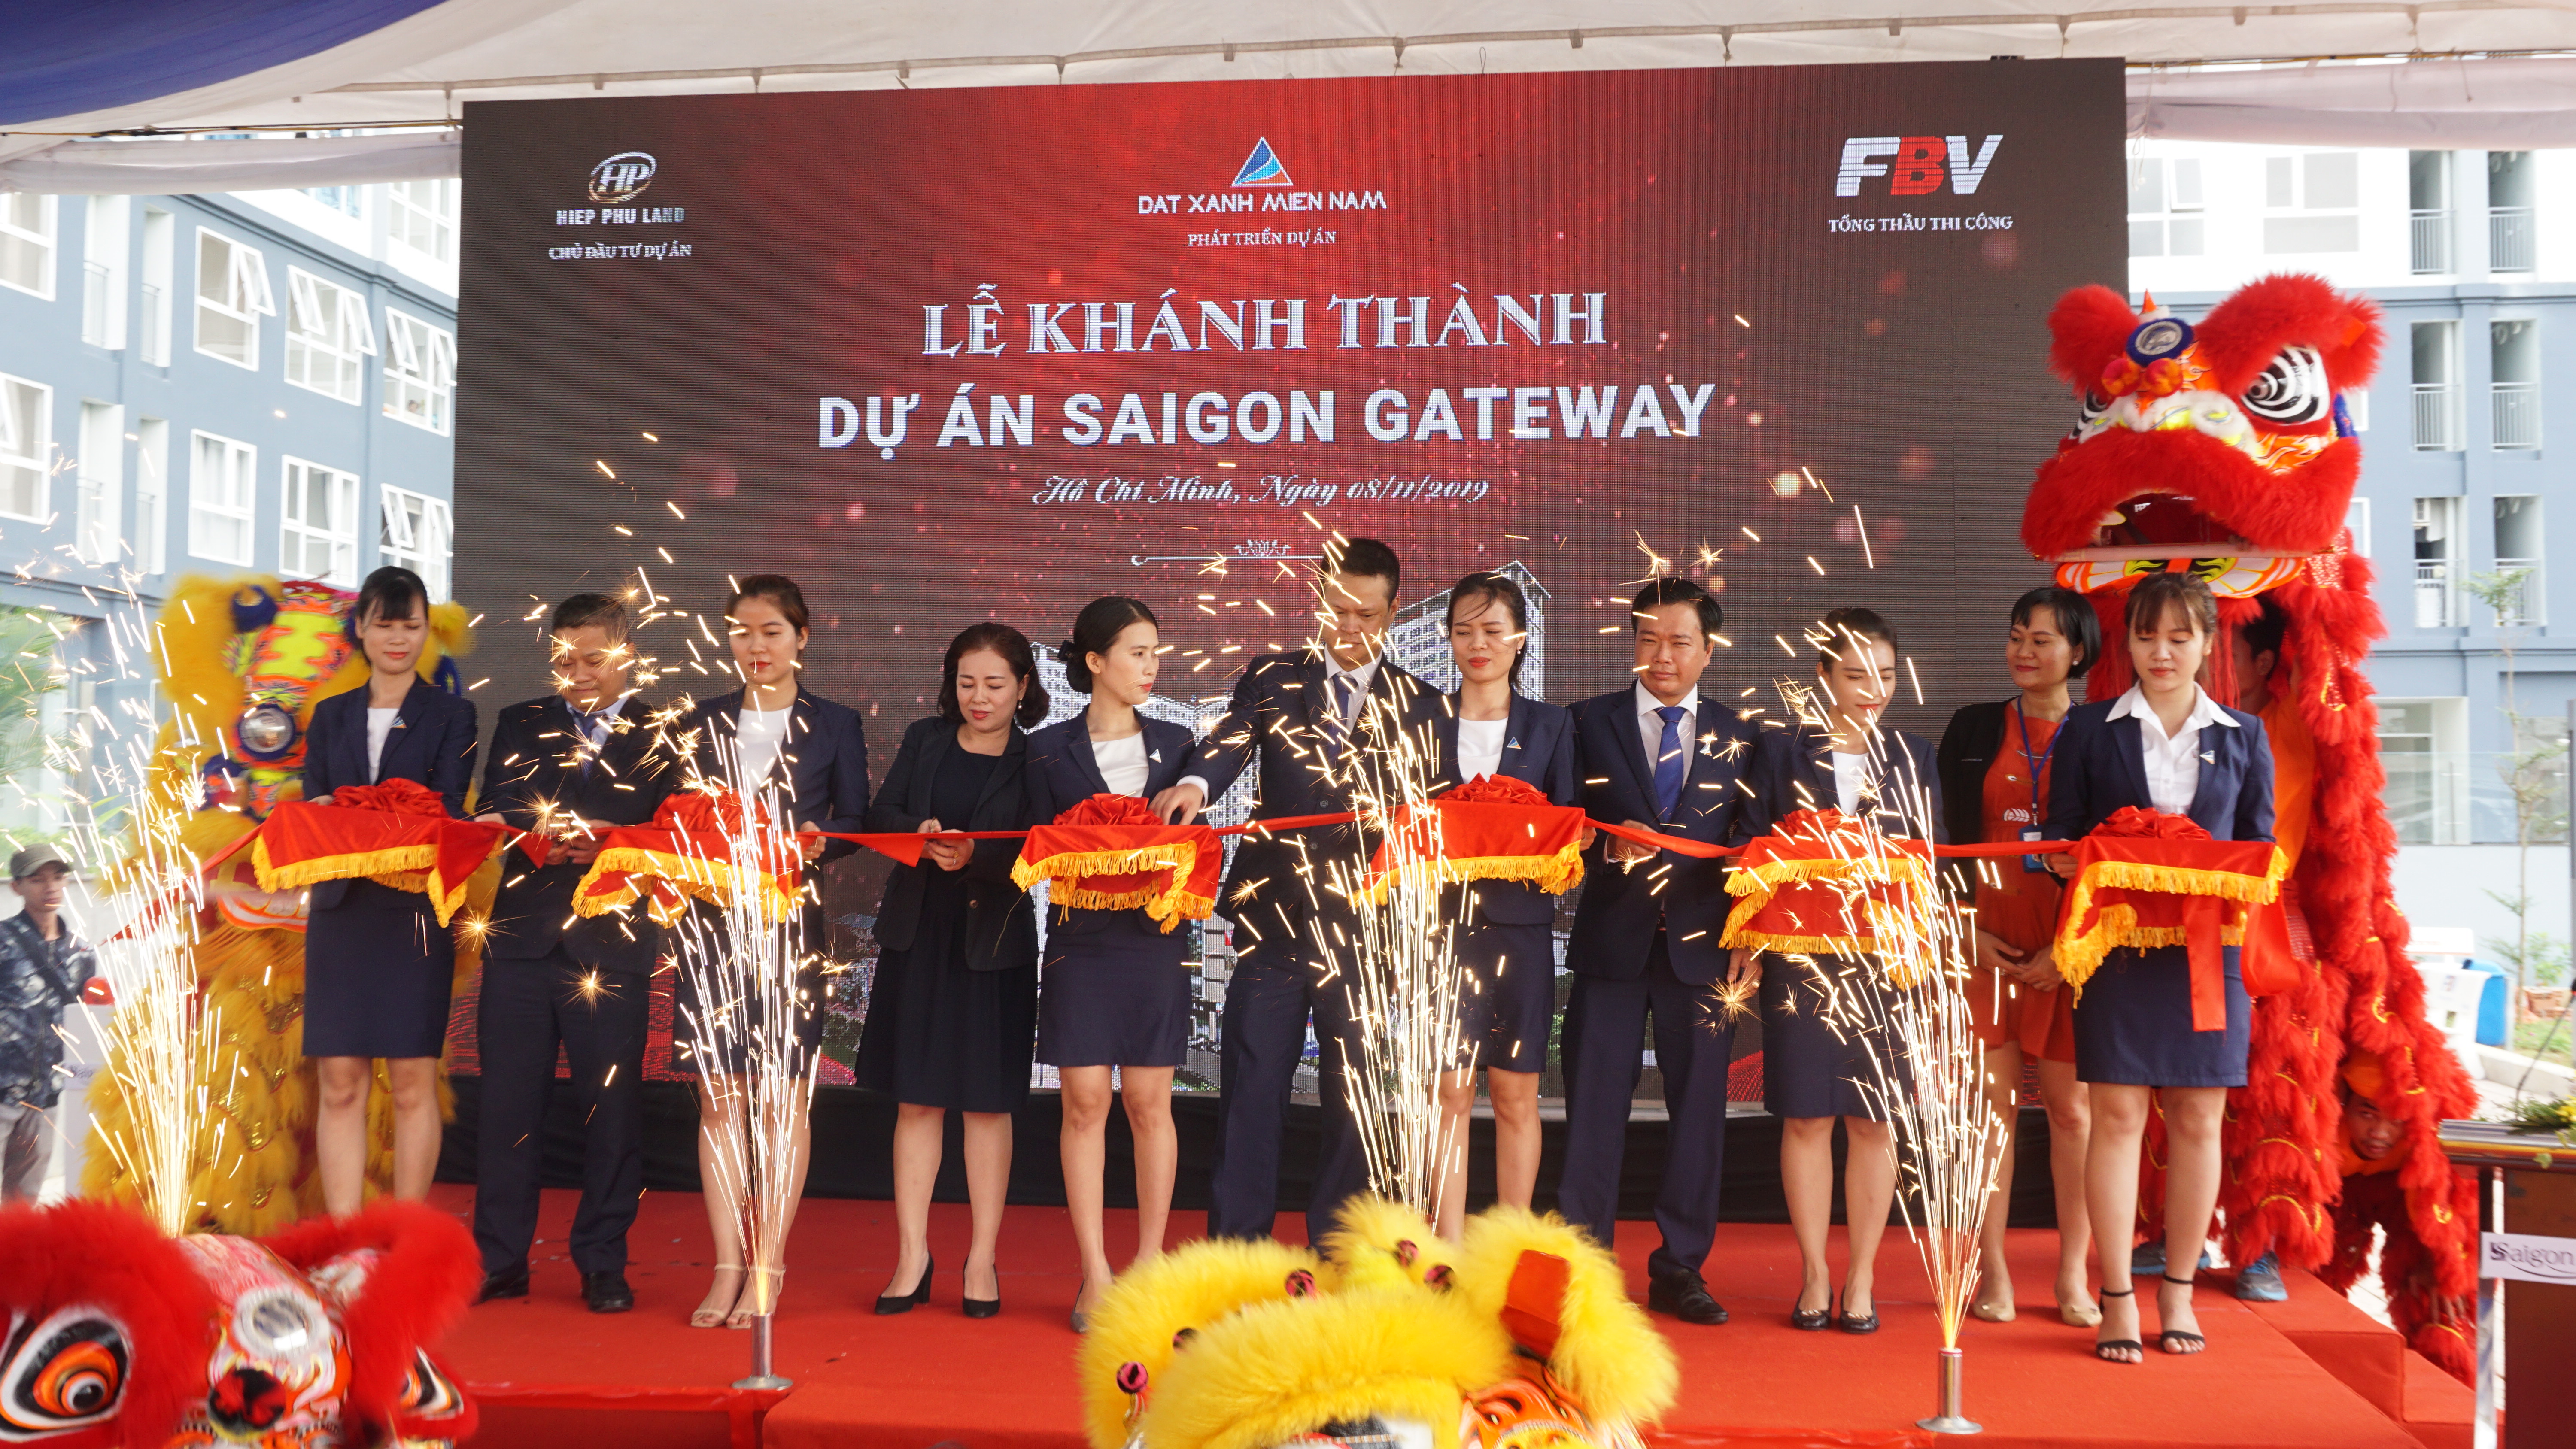 Công ty BĐS Hùng Vương tiếp nhận quản lý và vận hành toà nhà SaiGon GateWay